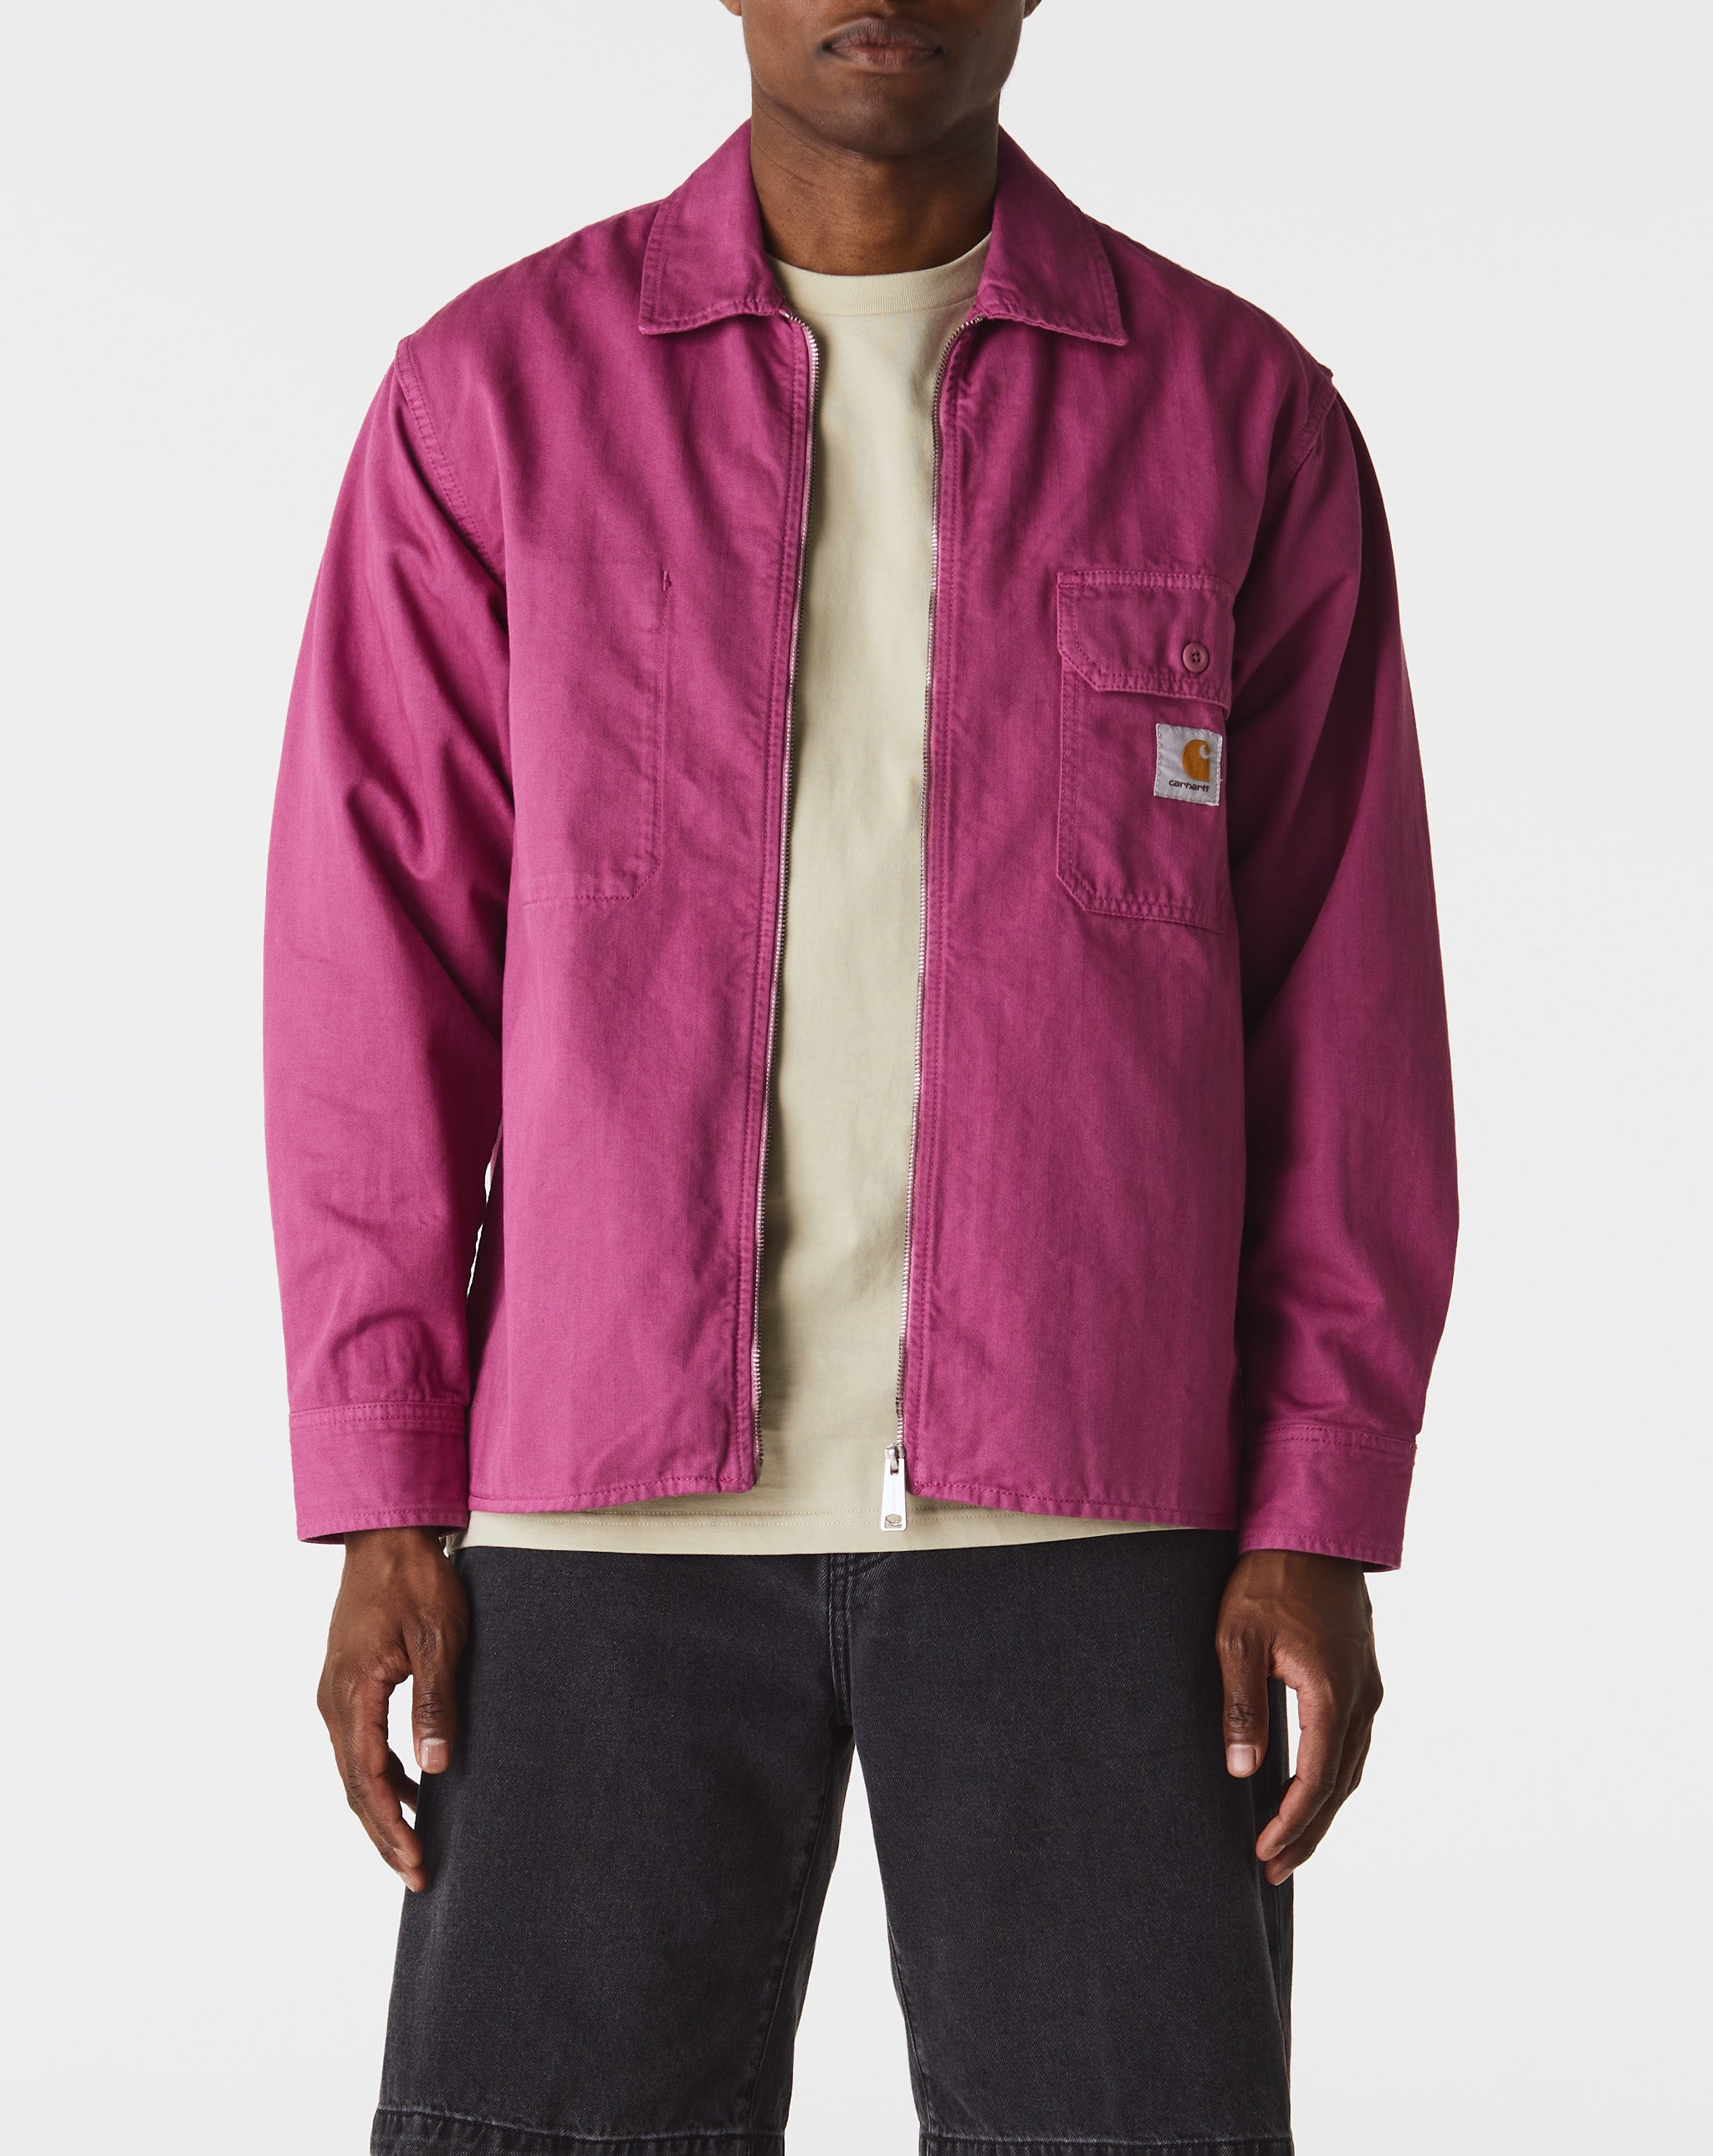 Carhartt WIP Painer Shirt Jacket  - Cheap Urlfreeze Jordan outlet